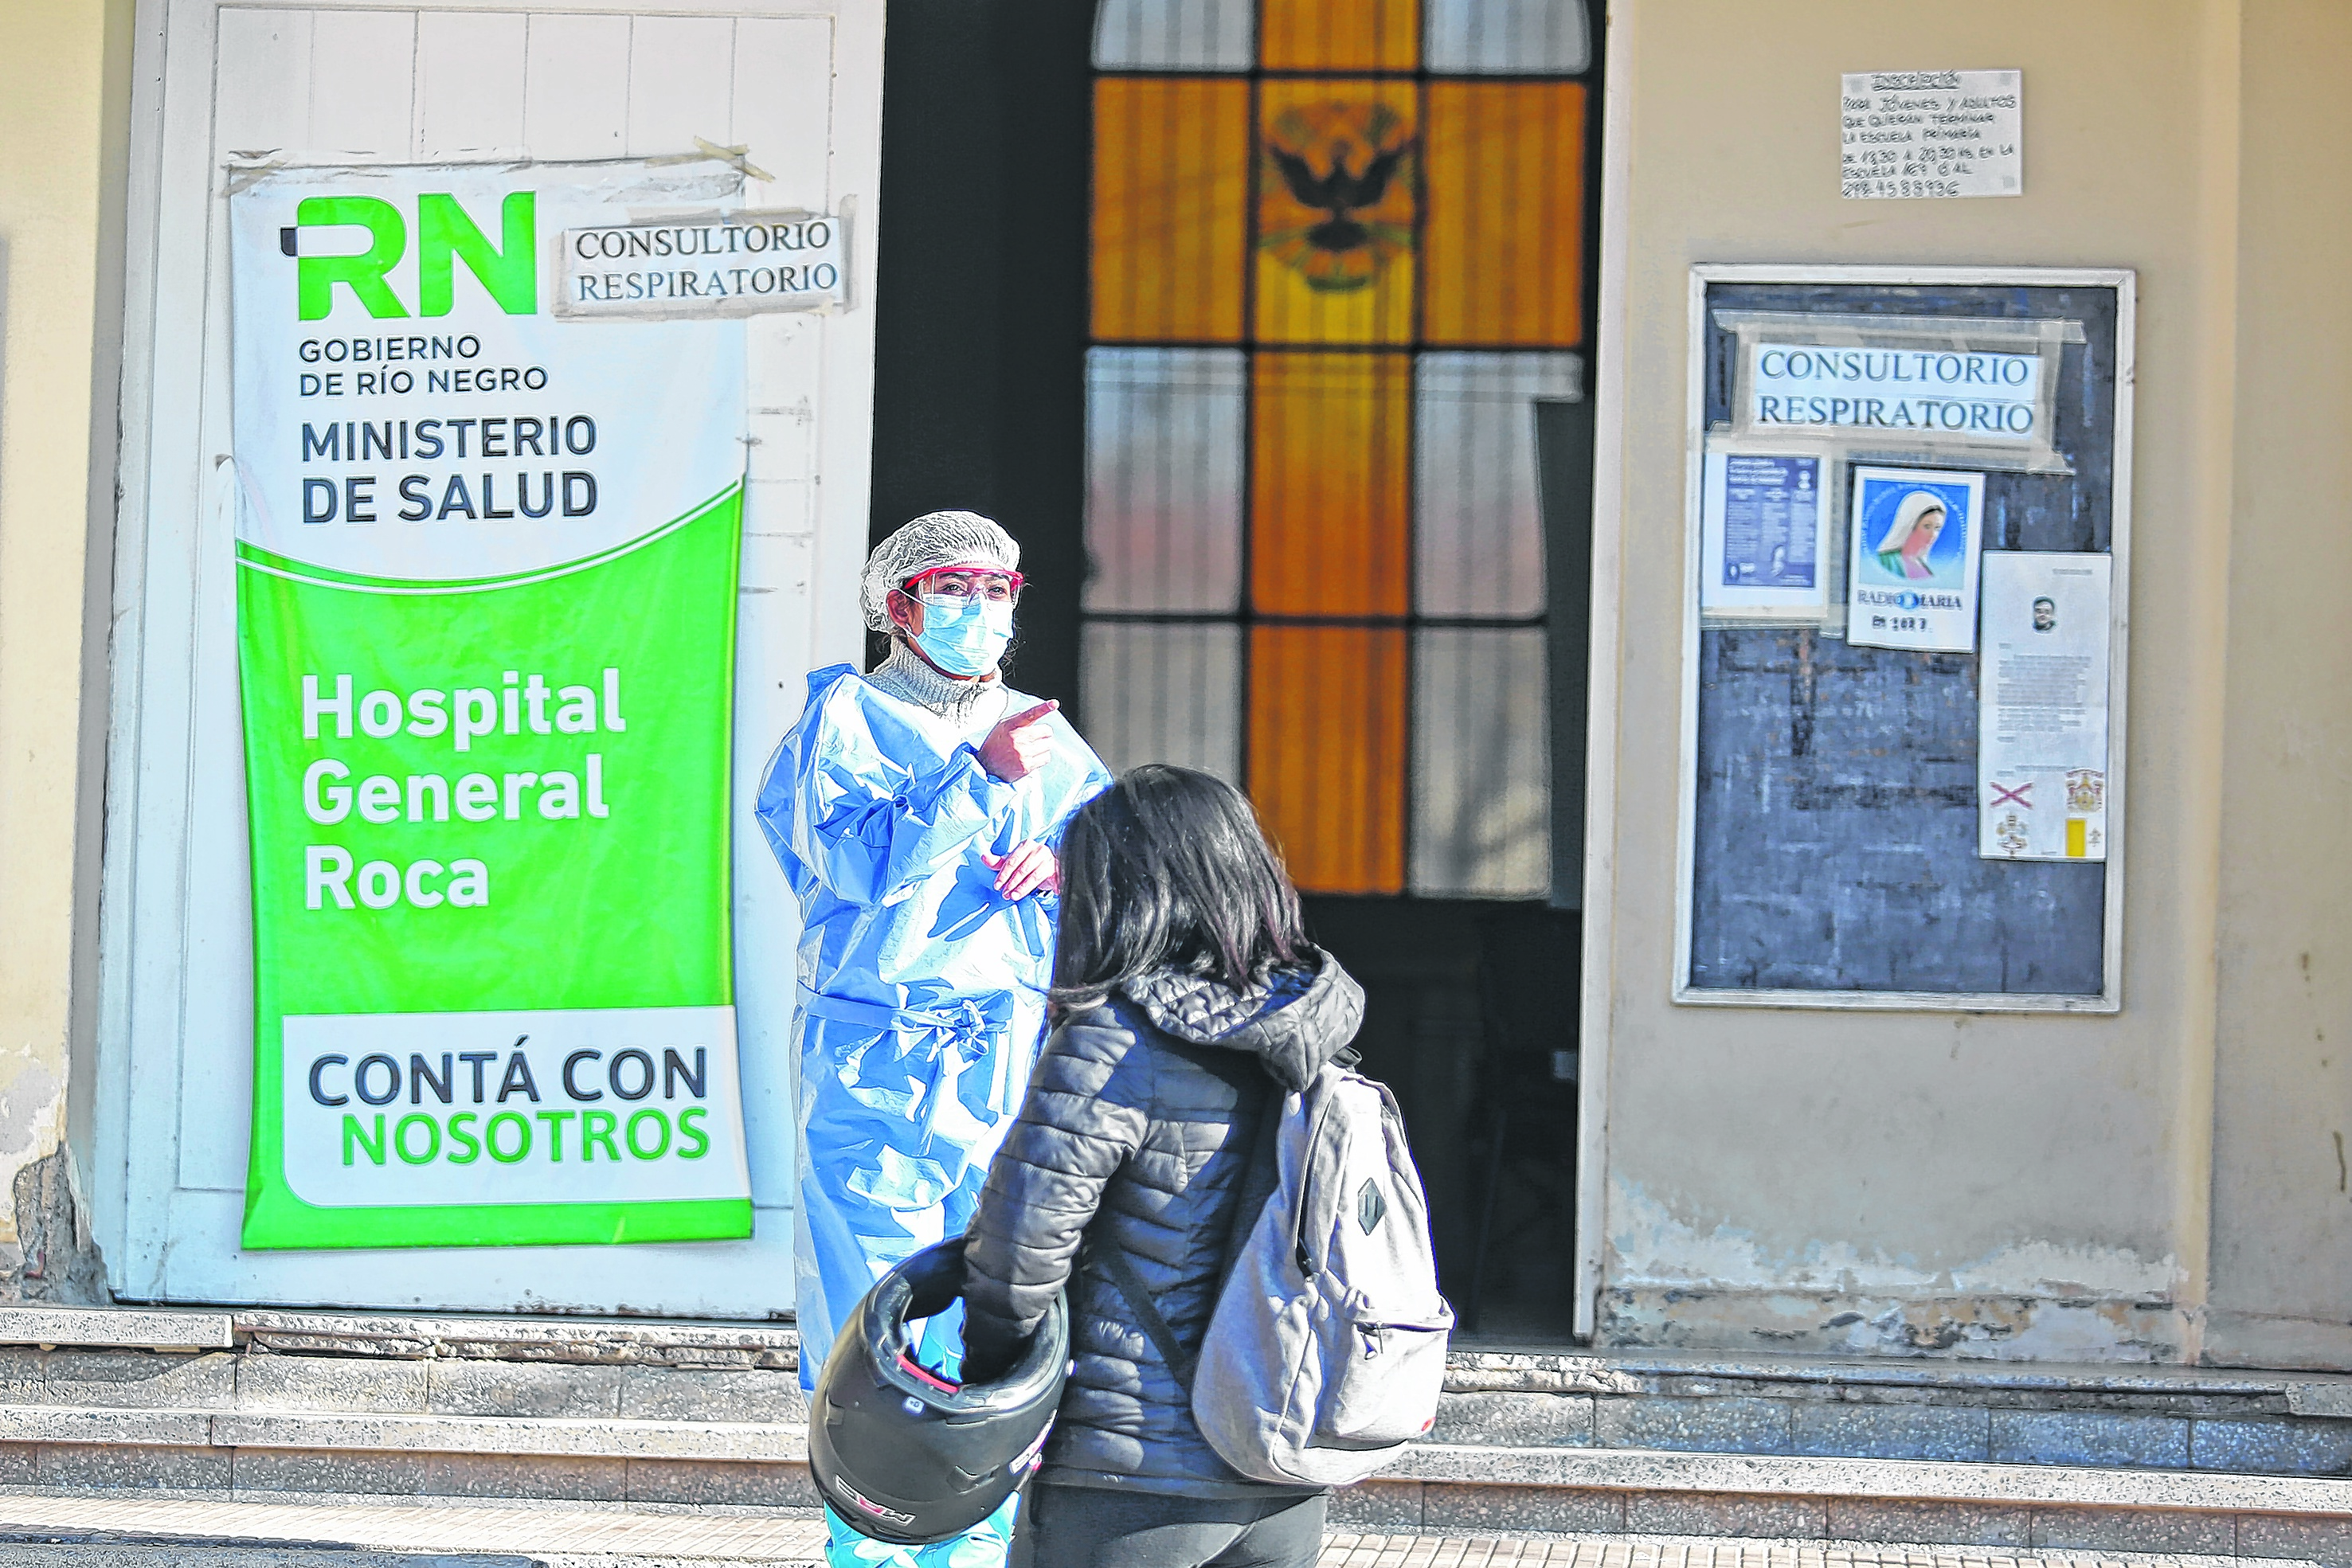 El centro de consultas respiratorias en el hospital de Roca. Foto: Juan Thomes